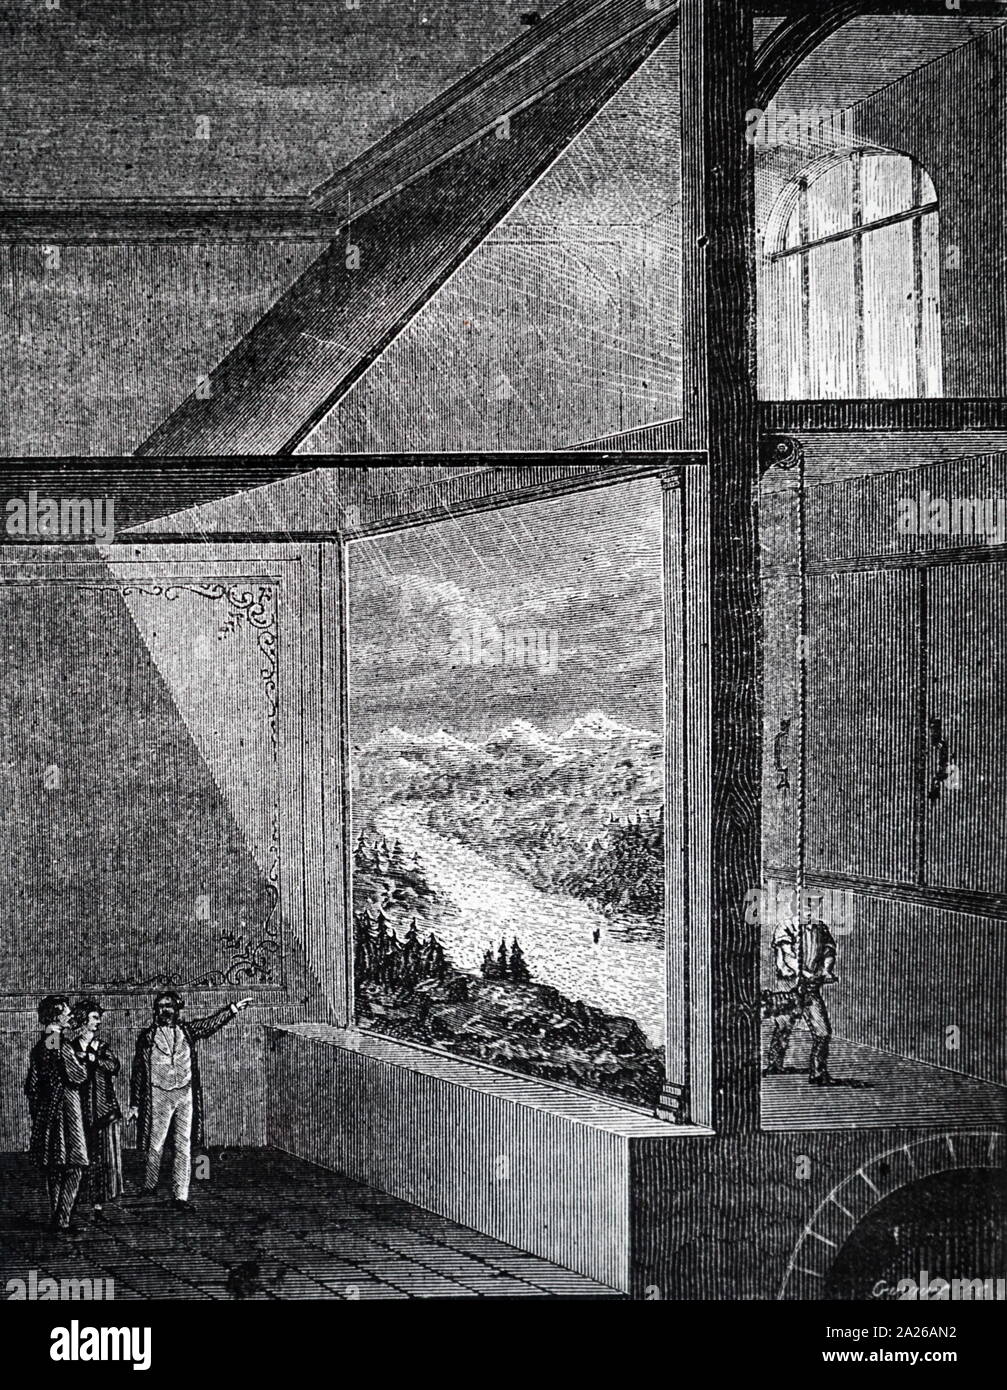 Abbildung: Diorama von Louis Daguerre (1787 - 1851), französischer Künstler und Fotograf, für seine Erfindung der Daguerreotypie Prozess der Fotografie anerkannt. Er wurde als einer der Väter der Fotografie bekannt. Obwohl er vor allem berühmt für seine Verdienste um die Fotografie ist, er war auch ein begabter Maler und ein Entwickler des Dioramas Theater. Stockfoto